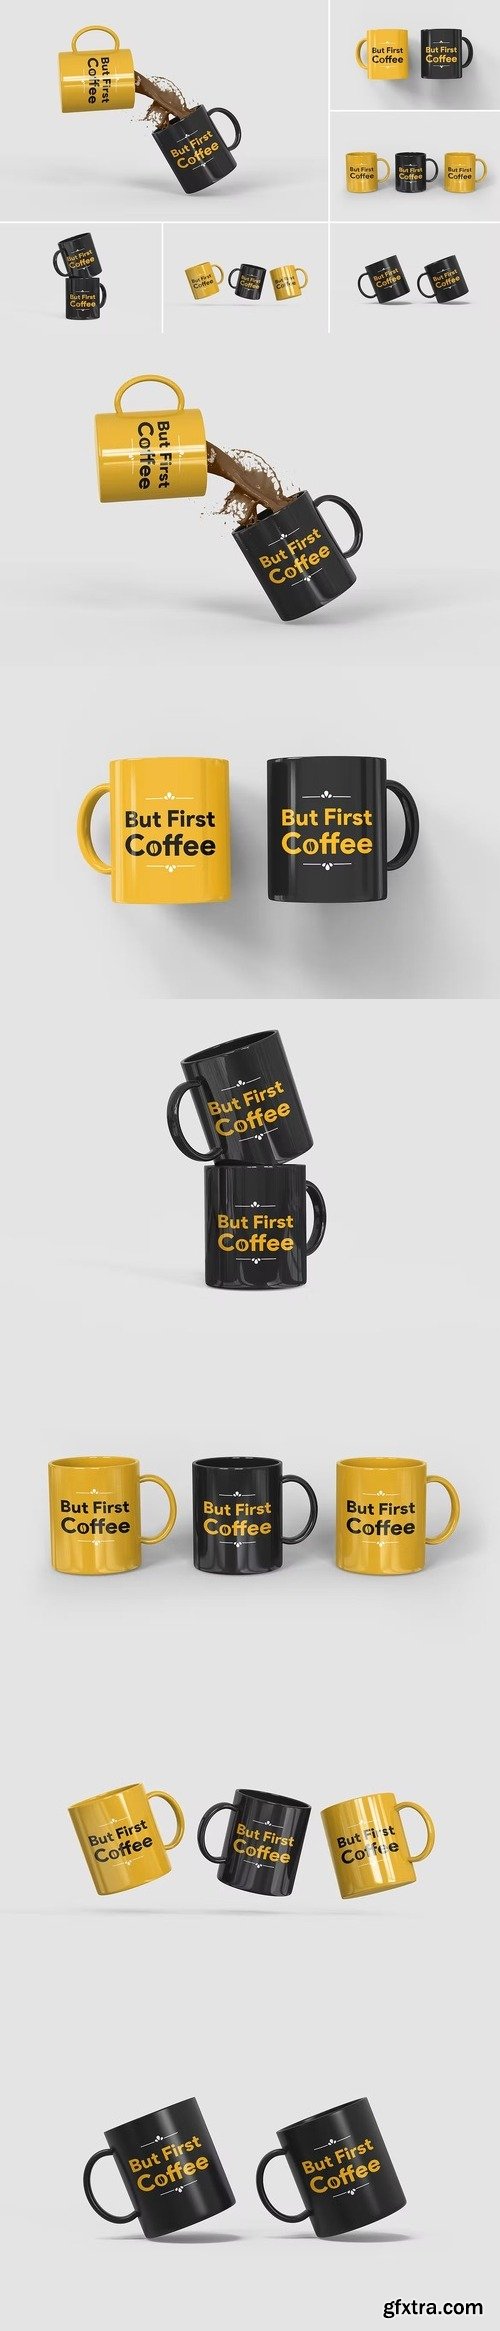 Coffee mug mockups